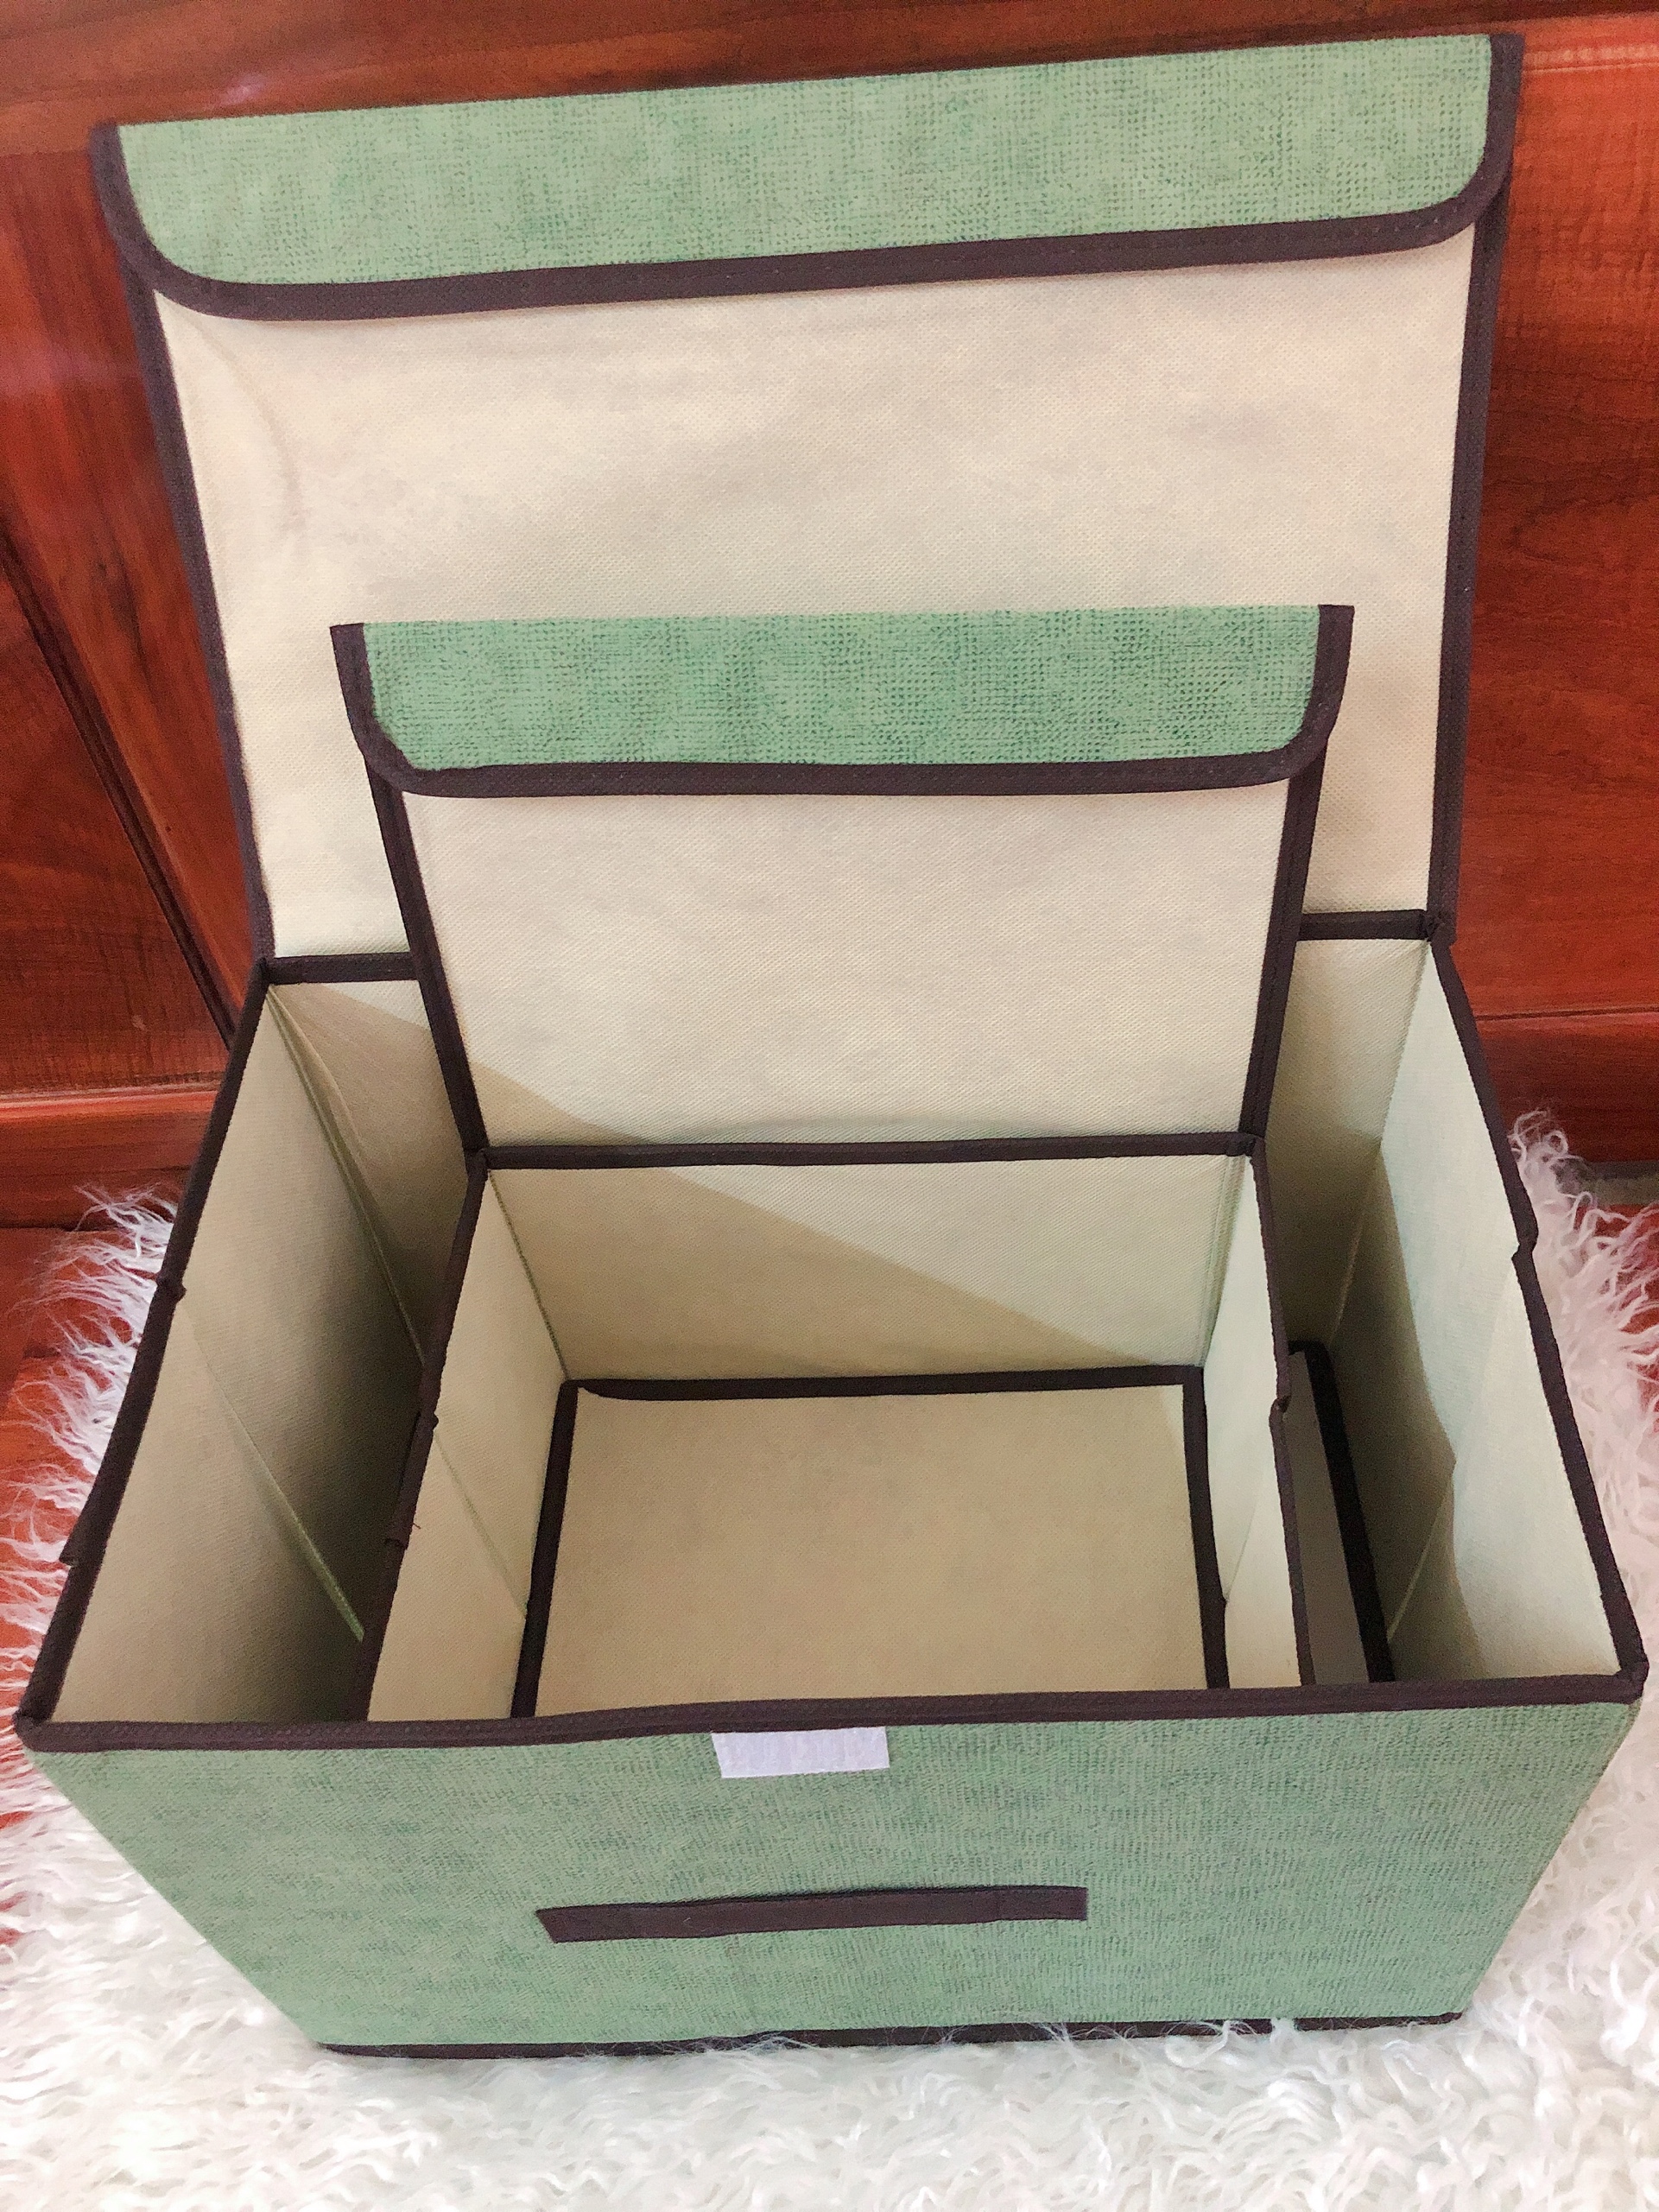 Combo 2 hộp đựng Nhà của Mẹ chất liệu vải bố, dùng để lưu trữ đồ đạc, quần áo đa năng - màu sắc giao ngẫu nhiên